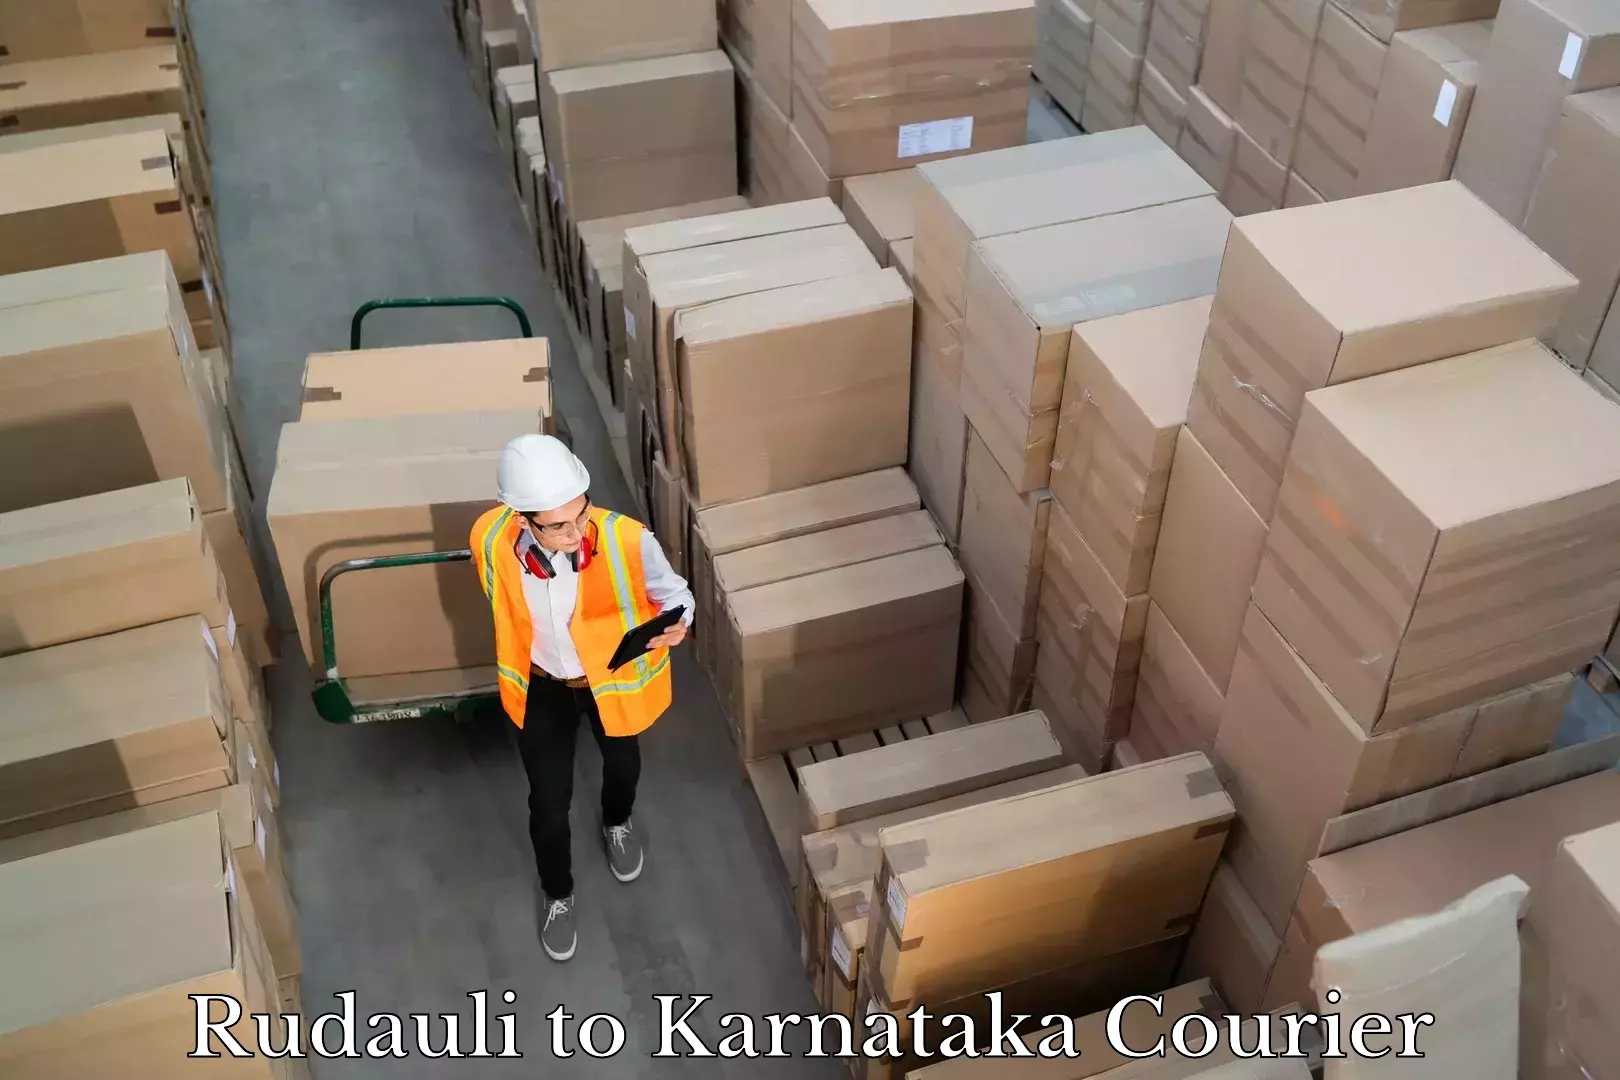 Nationwide courier service Rudauli to Karnataka